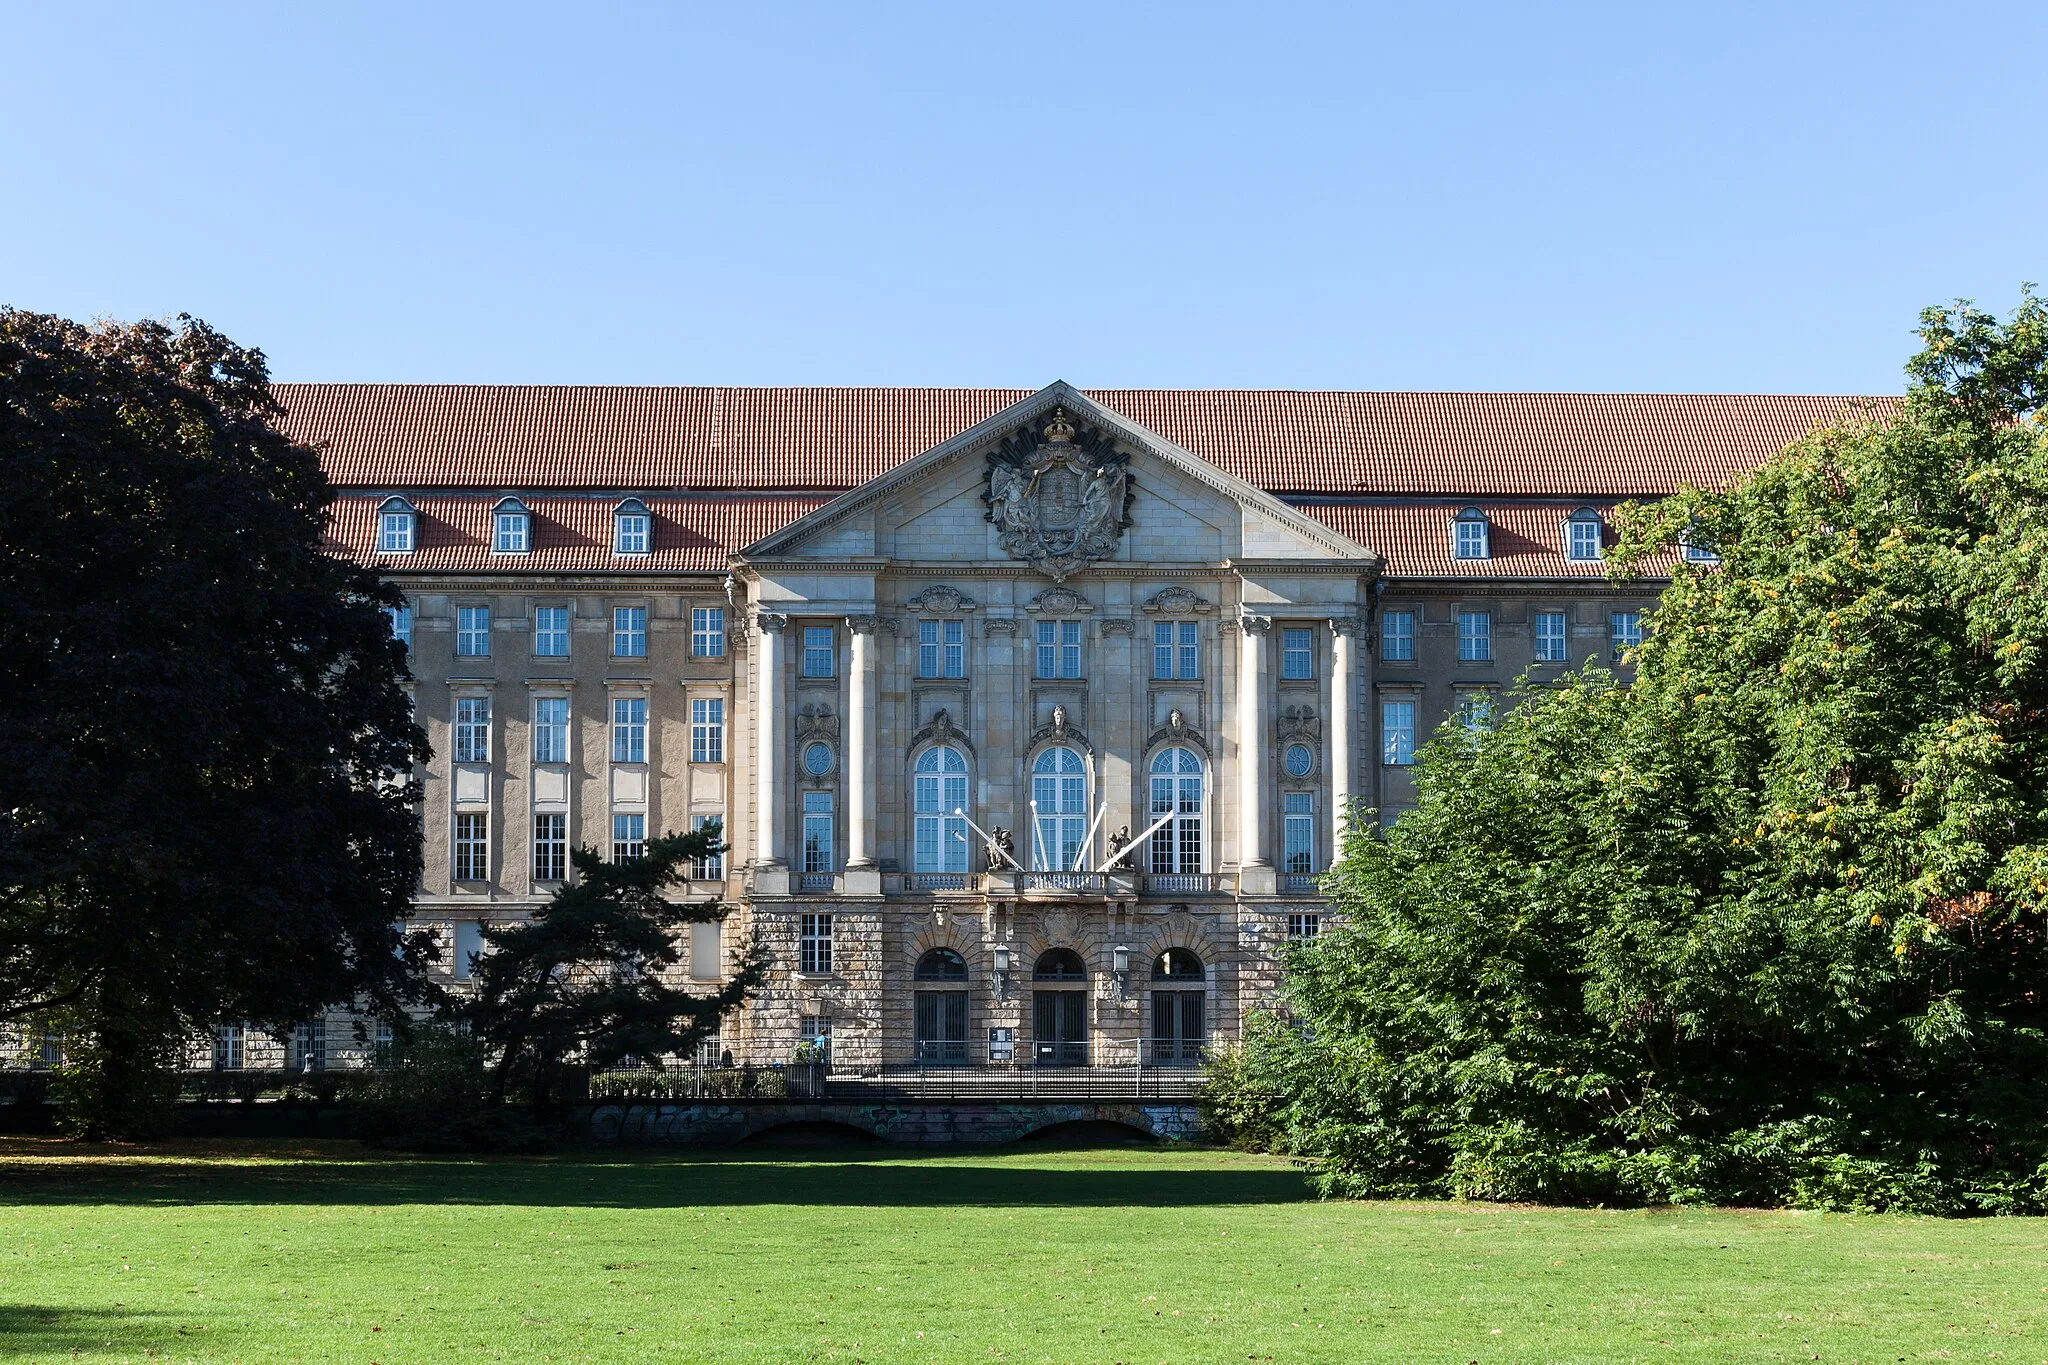 Photo showing: The Kammergericht Berlin (Higher Regional Court of Berlin). It's located in the Heinrich-von-Kleist-Park in Berlin-Schöneberg.